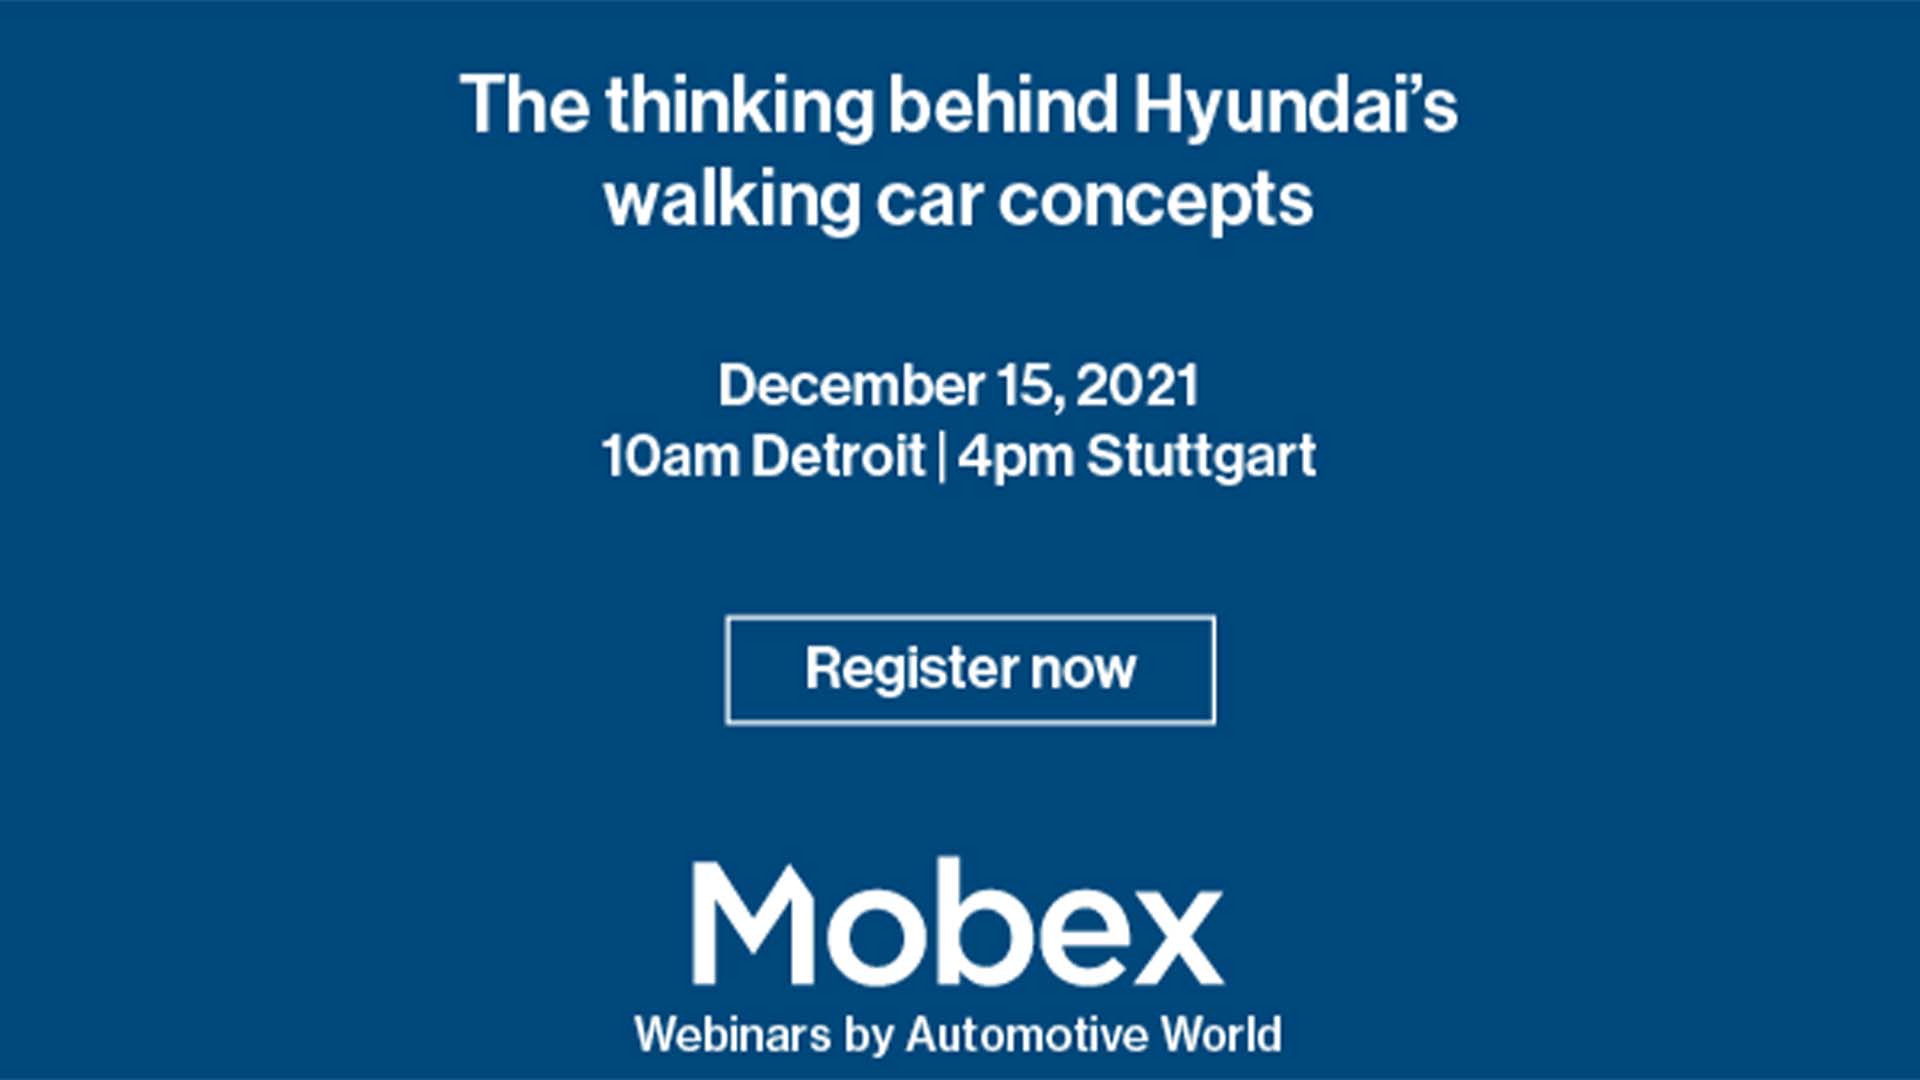 MobexWebinar: The thinking behind Hyundai’s walking car concepts